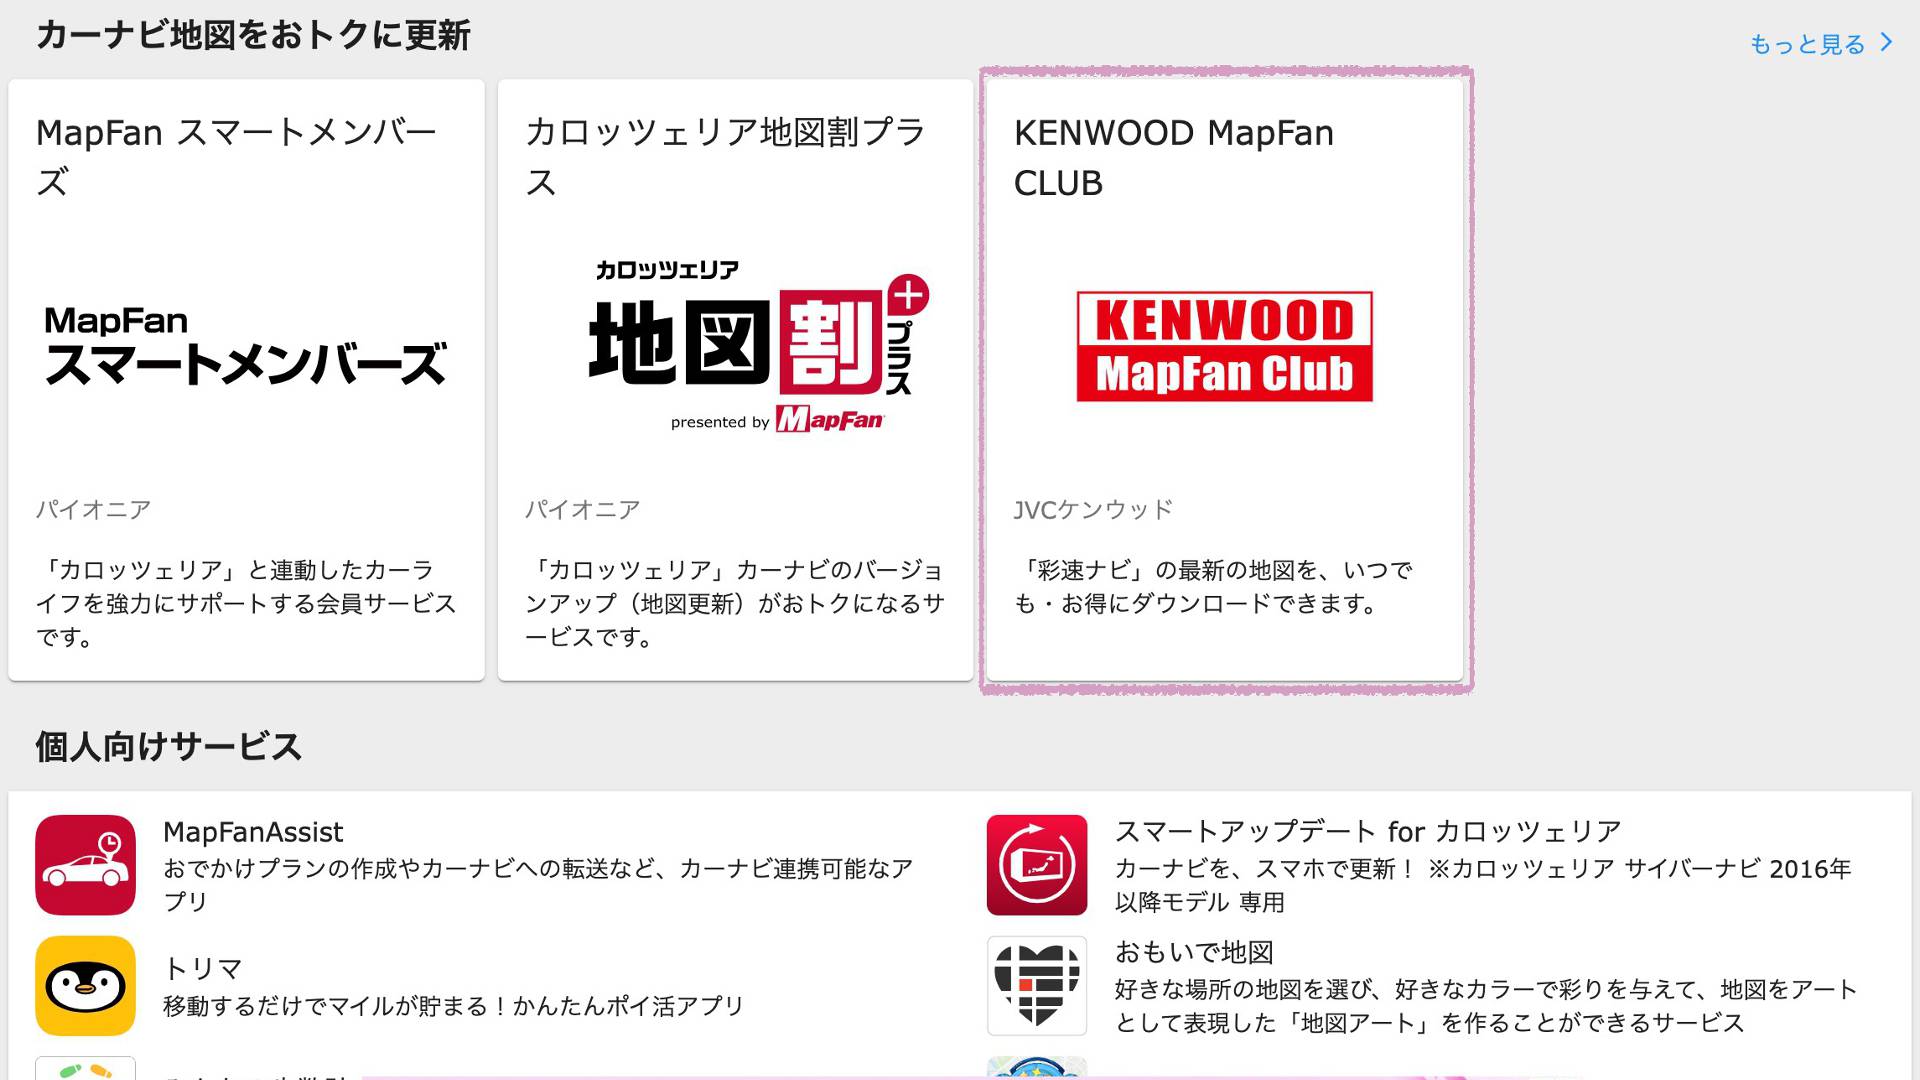 【軽バンカスタマイズ16】KENWOOD彩速ナビの地図データをMapFan Clubに会員登録して無料で2回更新する方法と退会手順